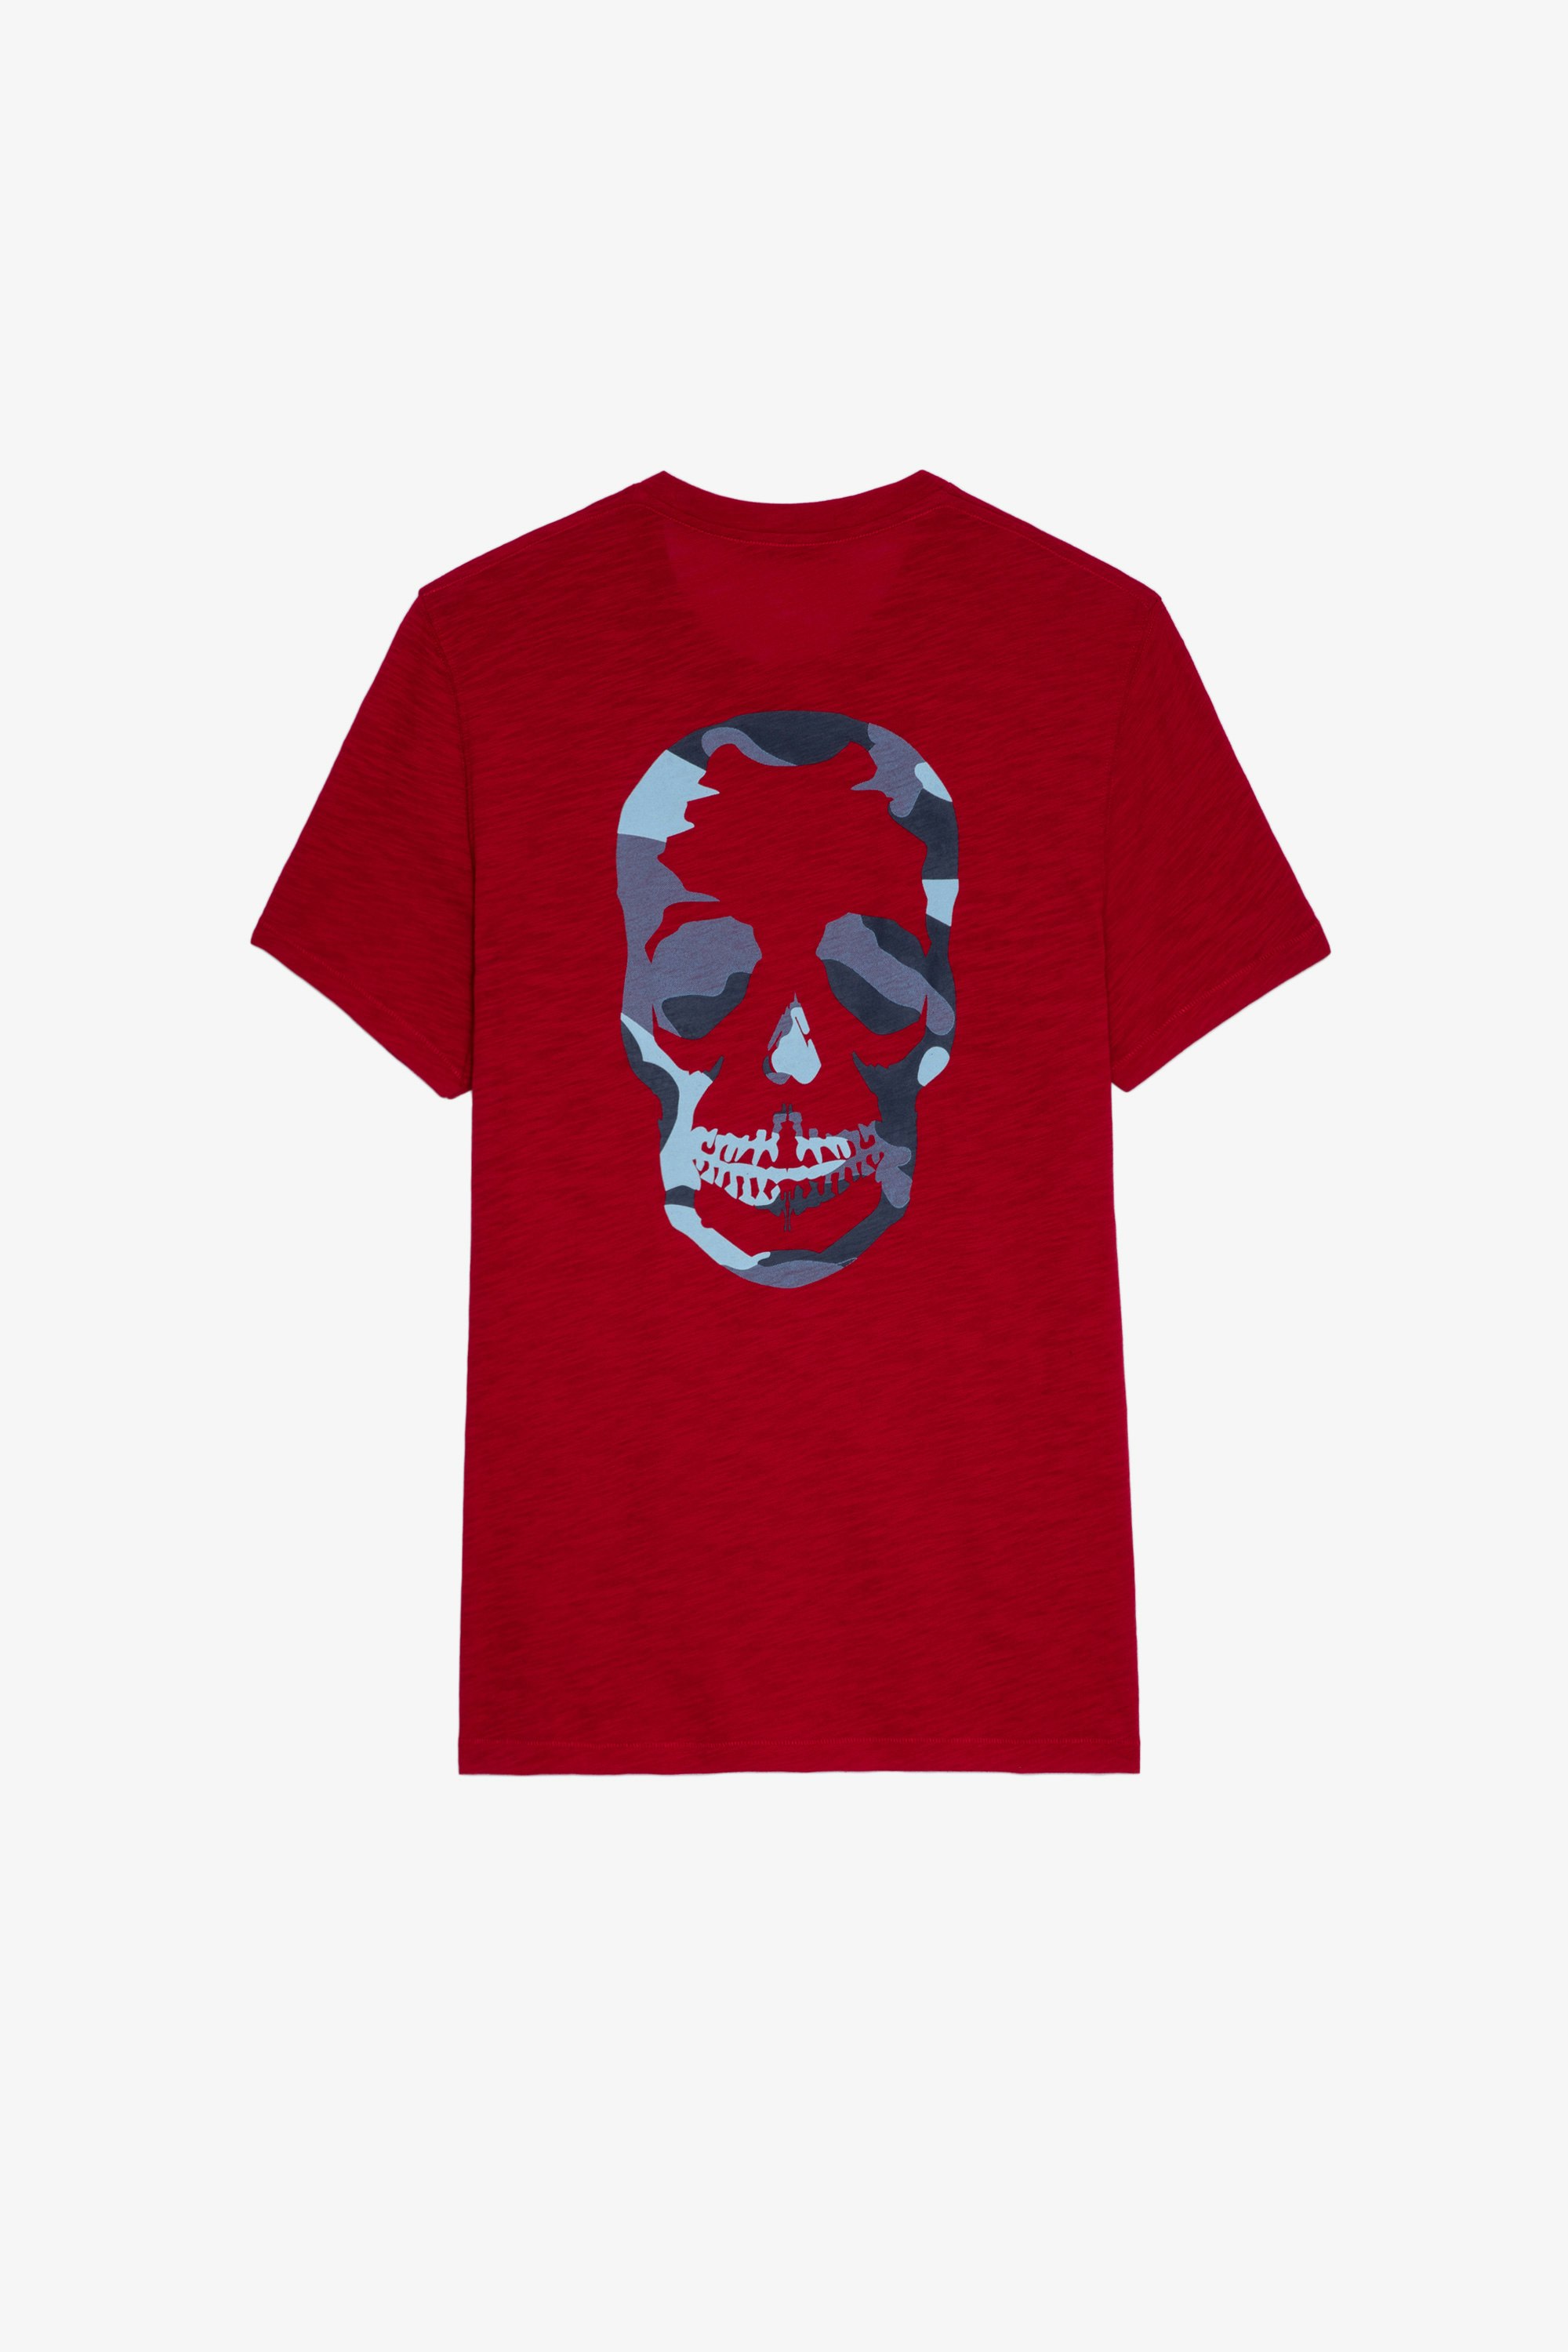 T-Shirt Stockholm Geflammt Herren-T-Shirt aus roter, geflammter Baumwolle mit Totenkopf auf dem Rücken